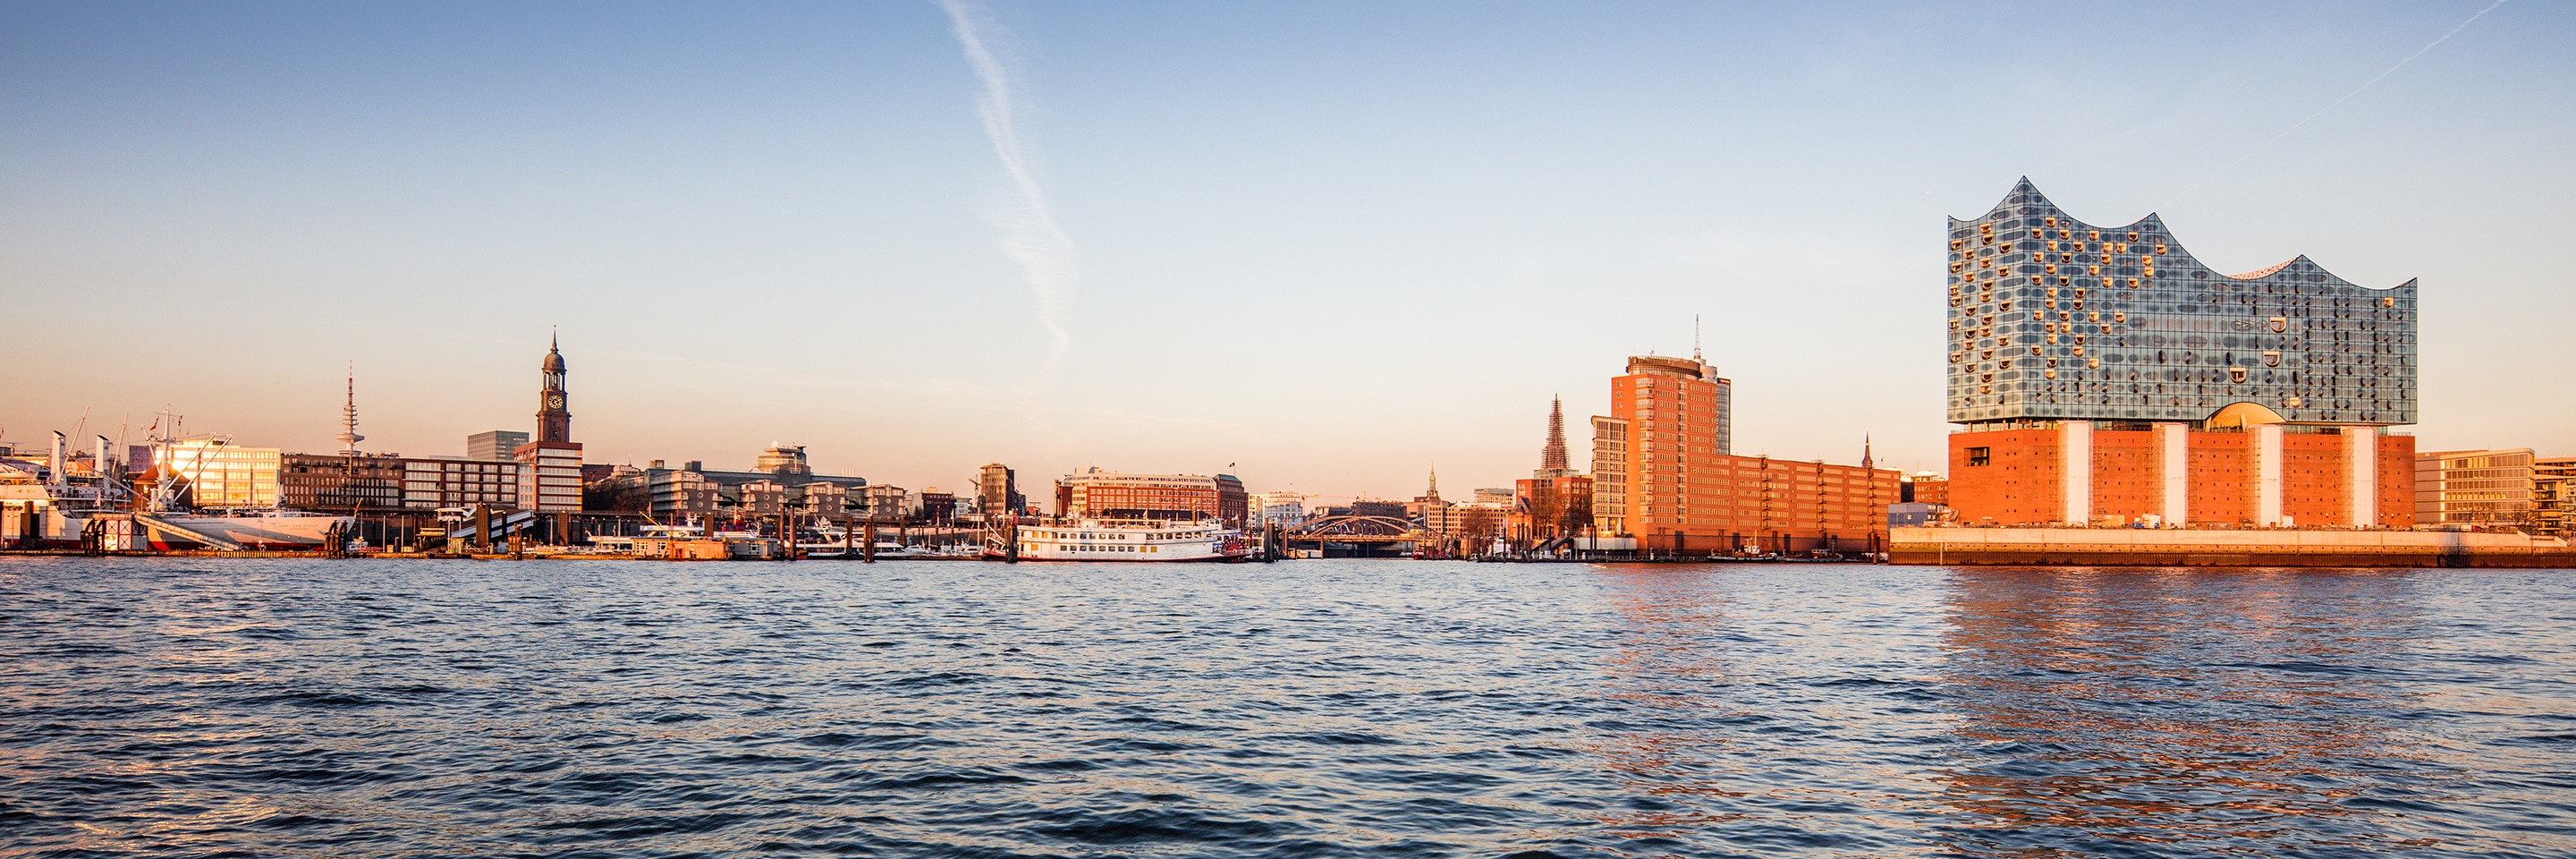 Il porto di Amburgo e l'Elbphilharmonie al tramonto. Hotel ad Amburgo - Marriott.